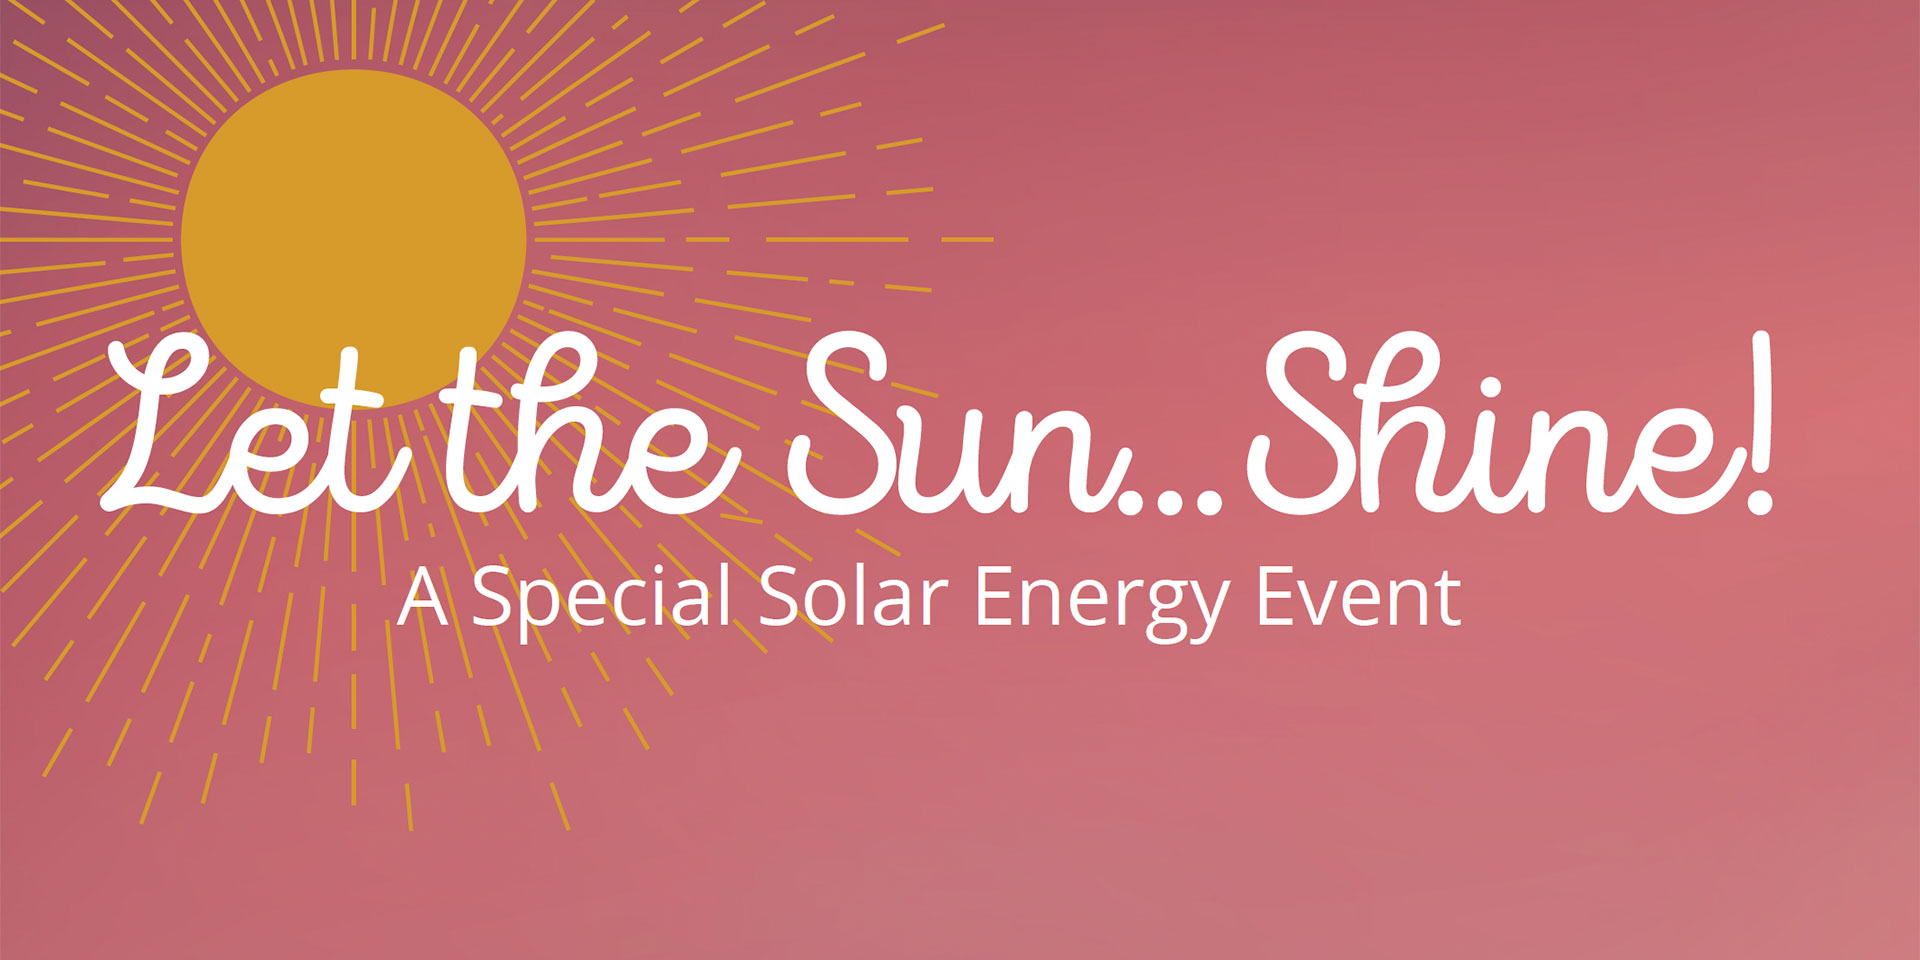 A special solar energy event.